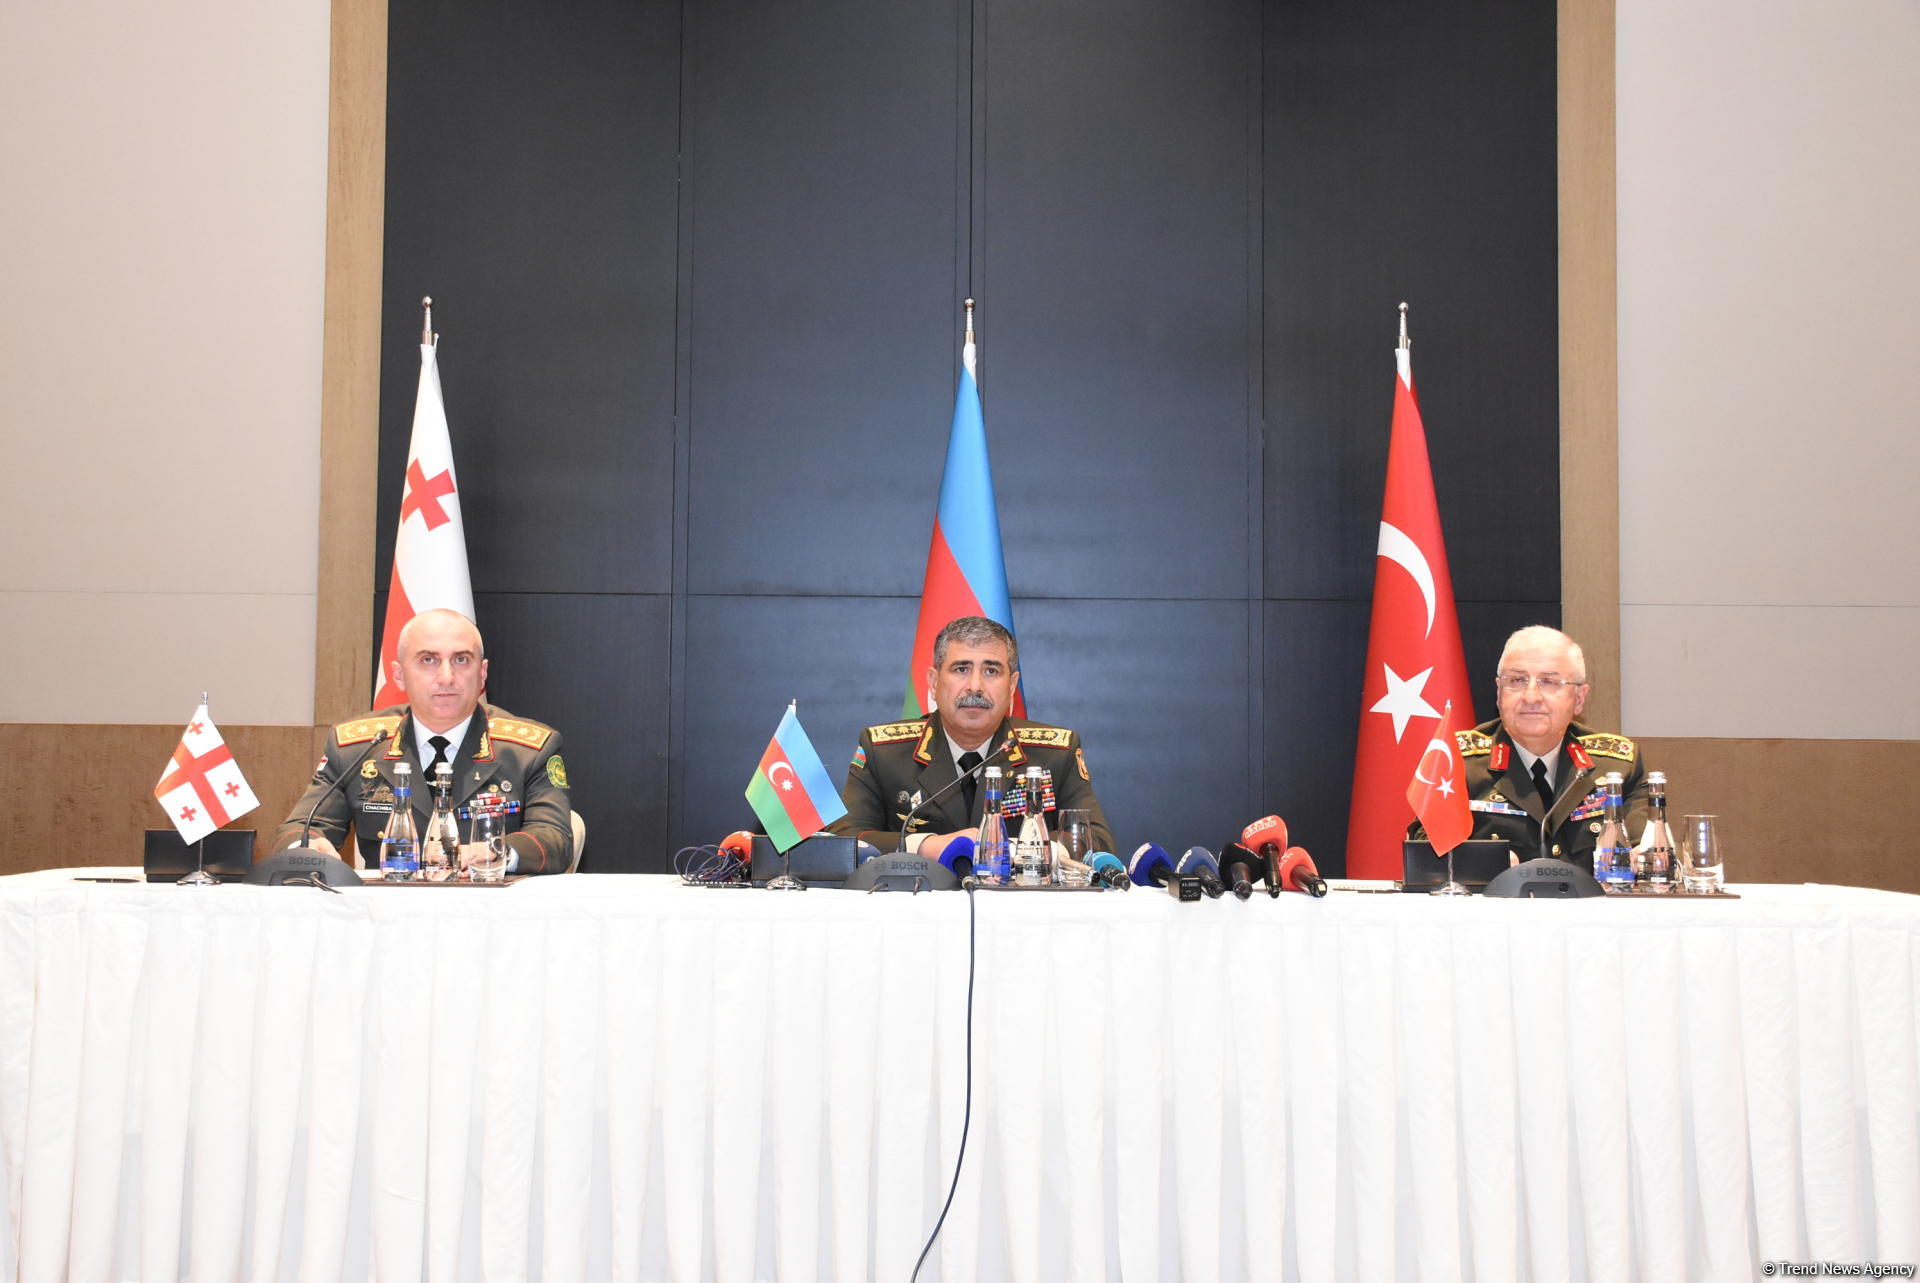 Azərbaycan, Türkiyə və Gürcüstan müdafiə rəsmiləri arasında protokol imzalanıb (FOTO)